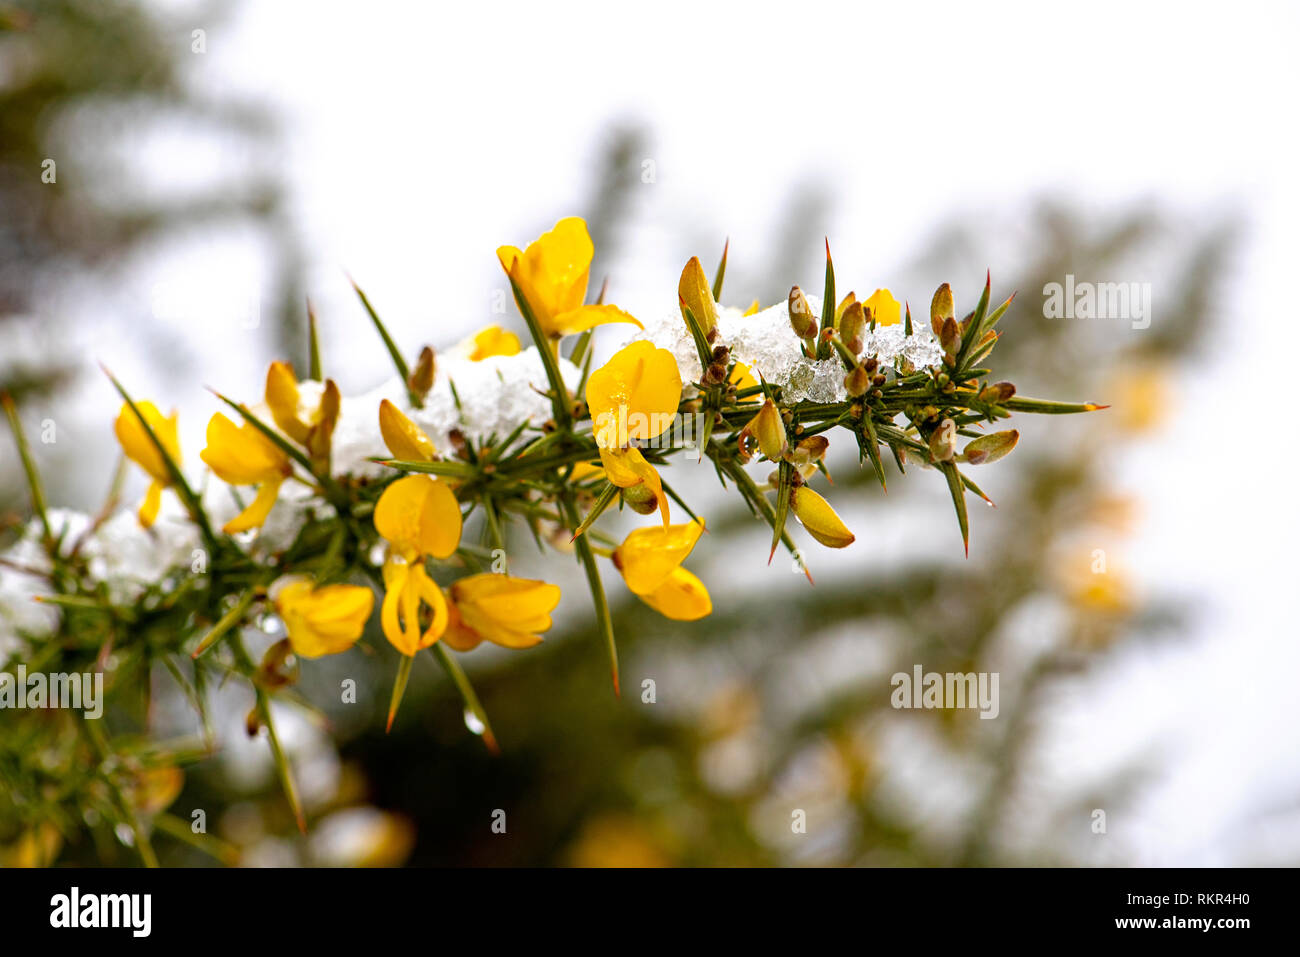 Imagen cercana de retamas amarillas flores de arbusto de la familia del guisante, las hojas que son modificados para formar las espinas, en la nieve. Foto de stock